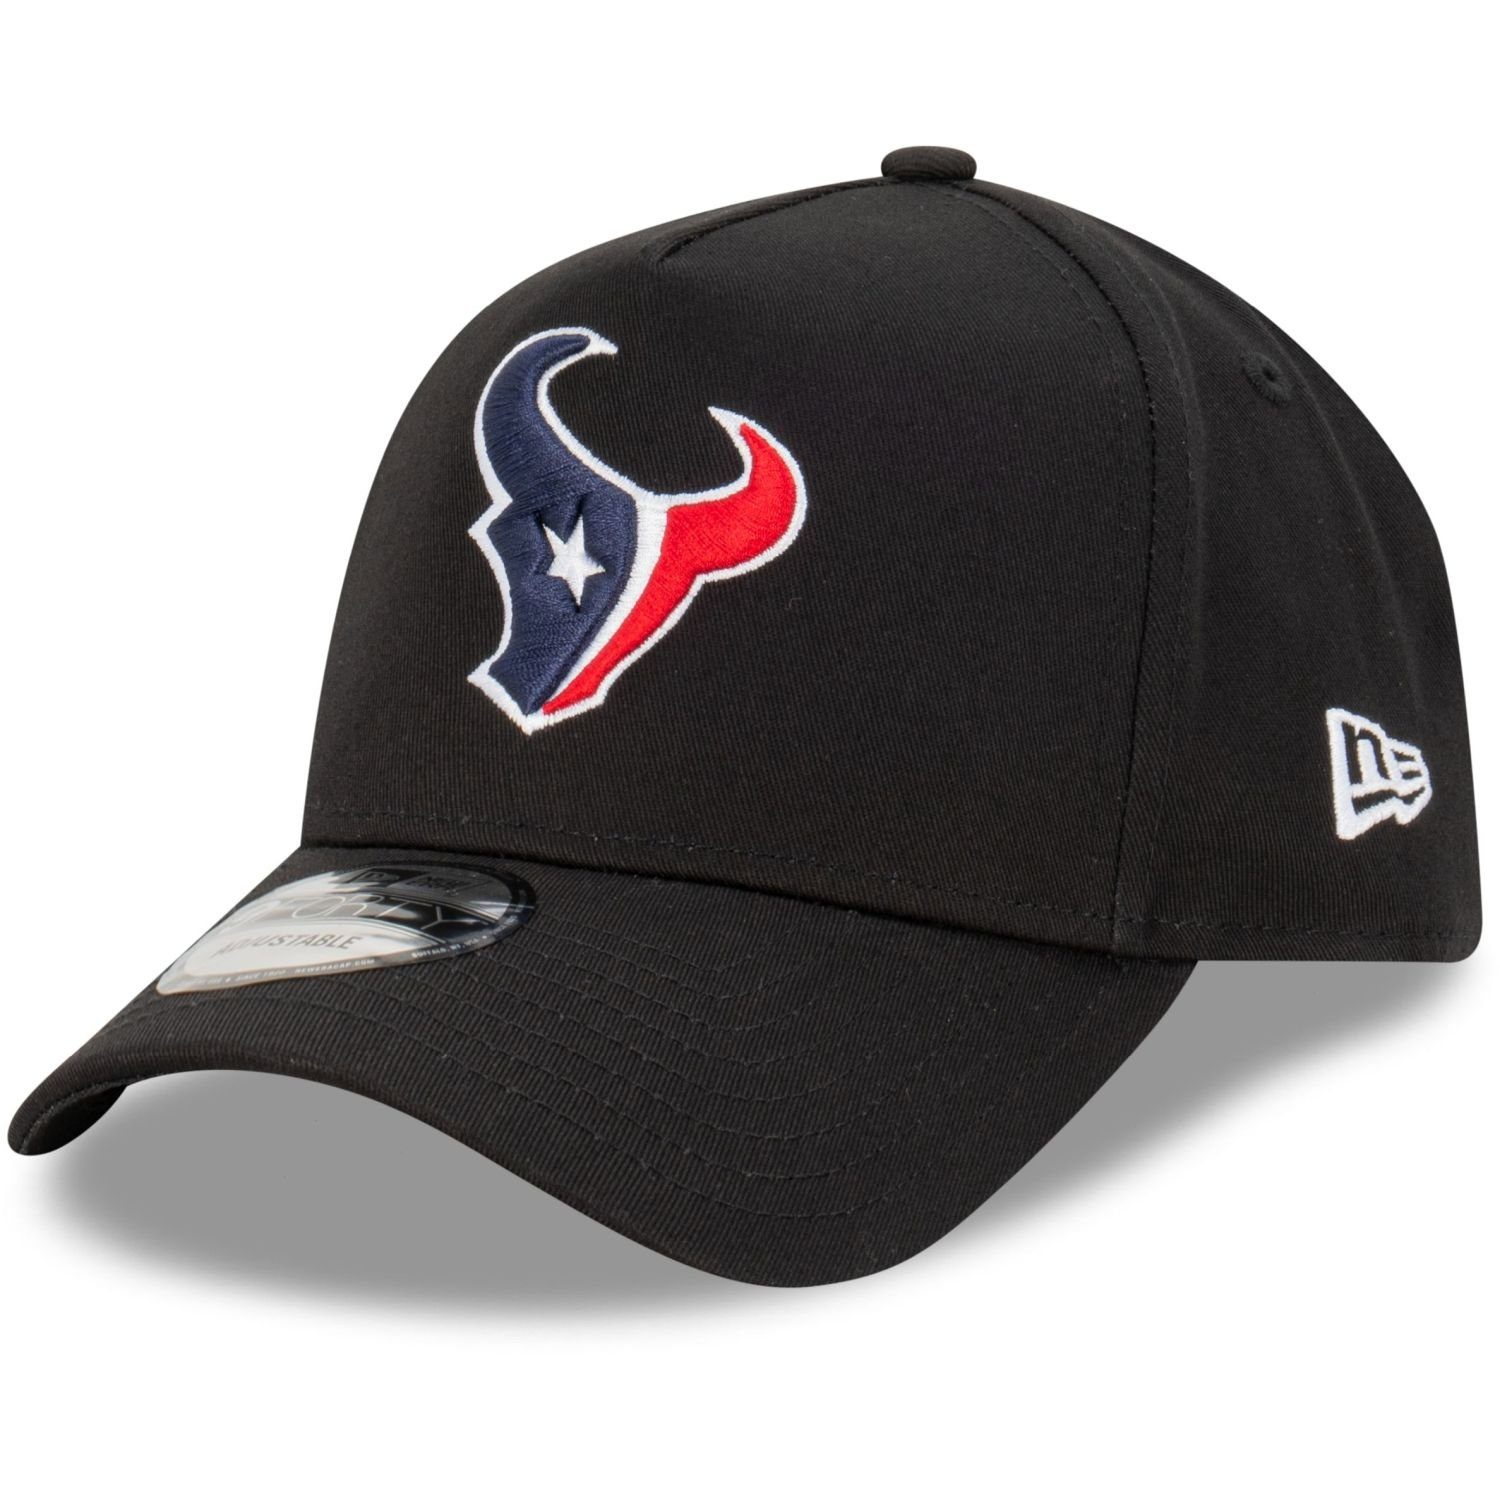 Trucker Teams Cap Trucker Houston New 9Forty Texans NFL AFrame Era